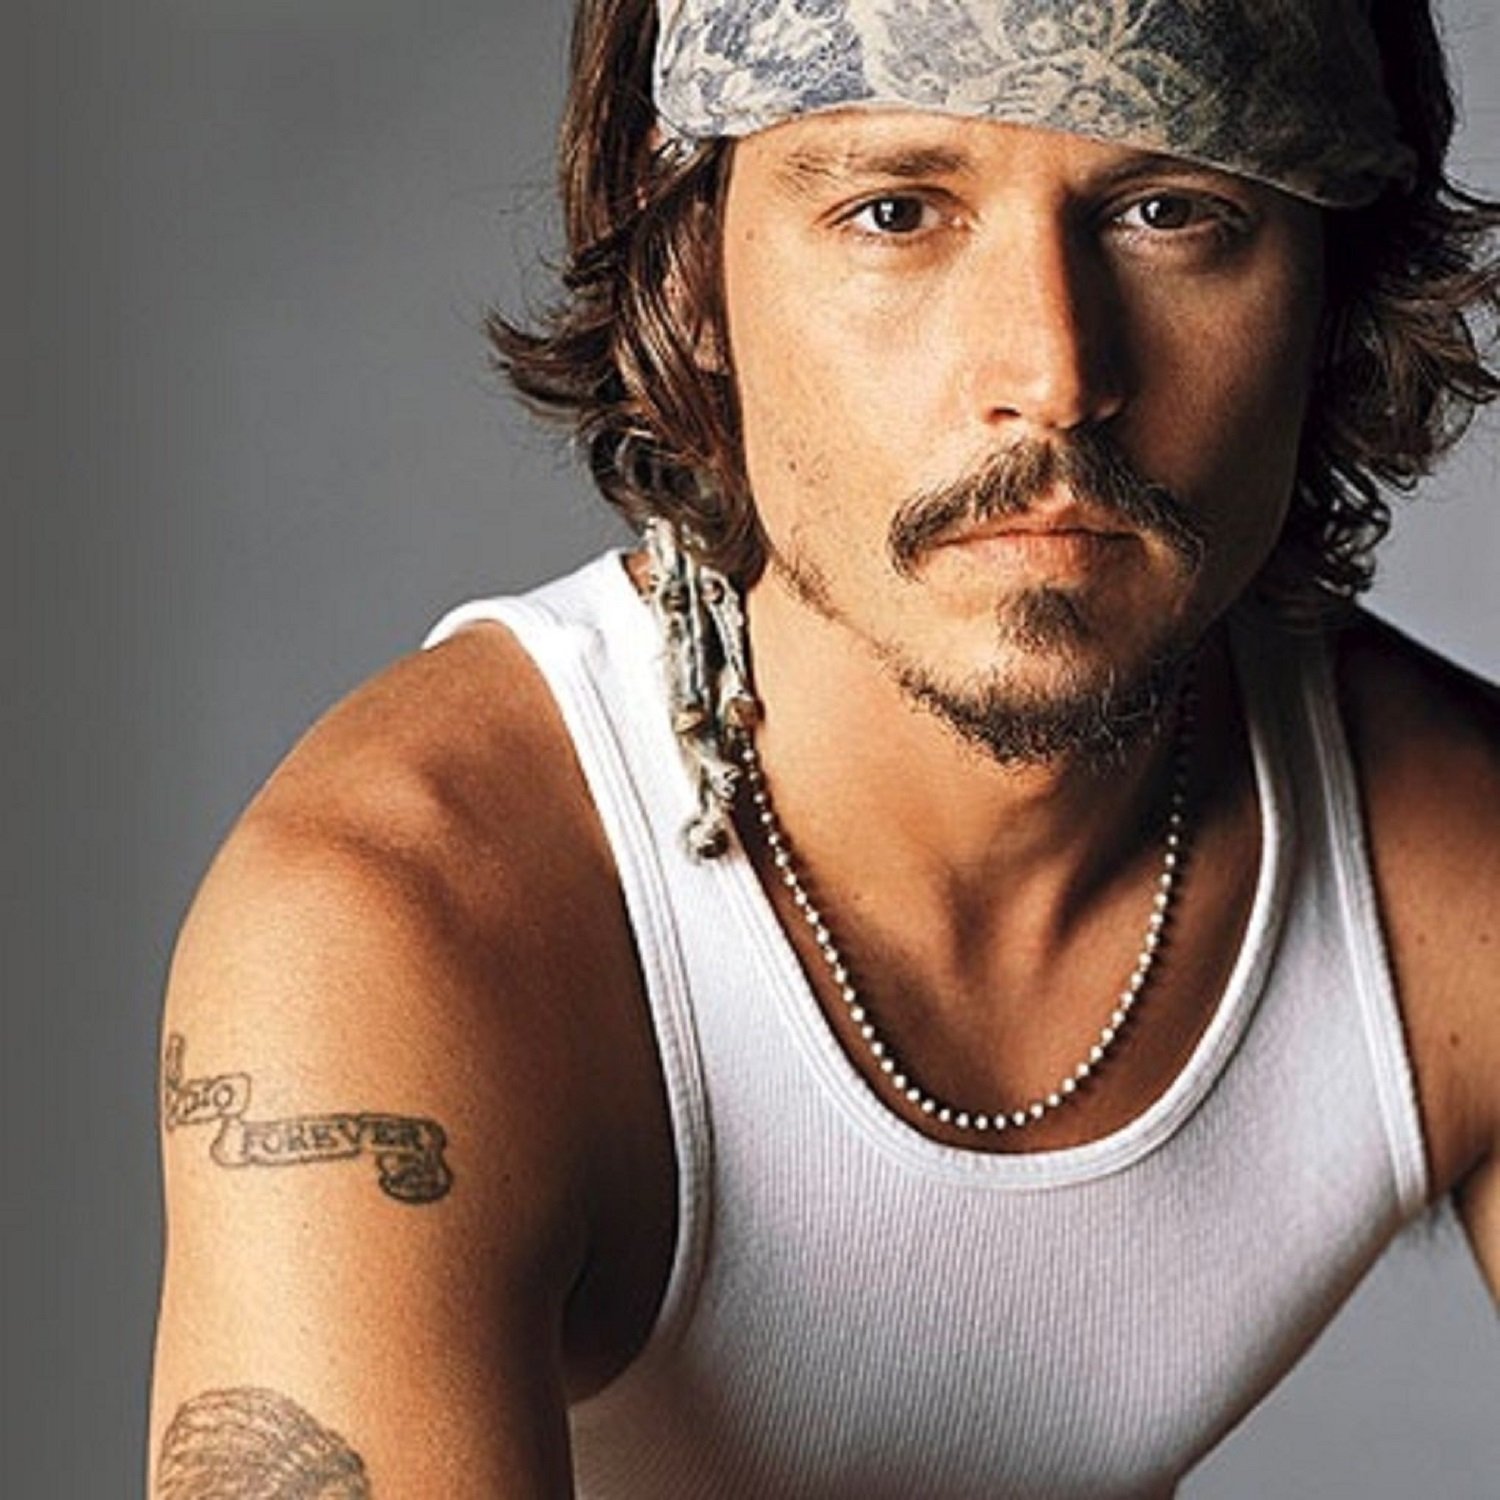 Si te encuentras a Johnny Depp paseando por el barrio de Gràcia, sí, es él